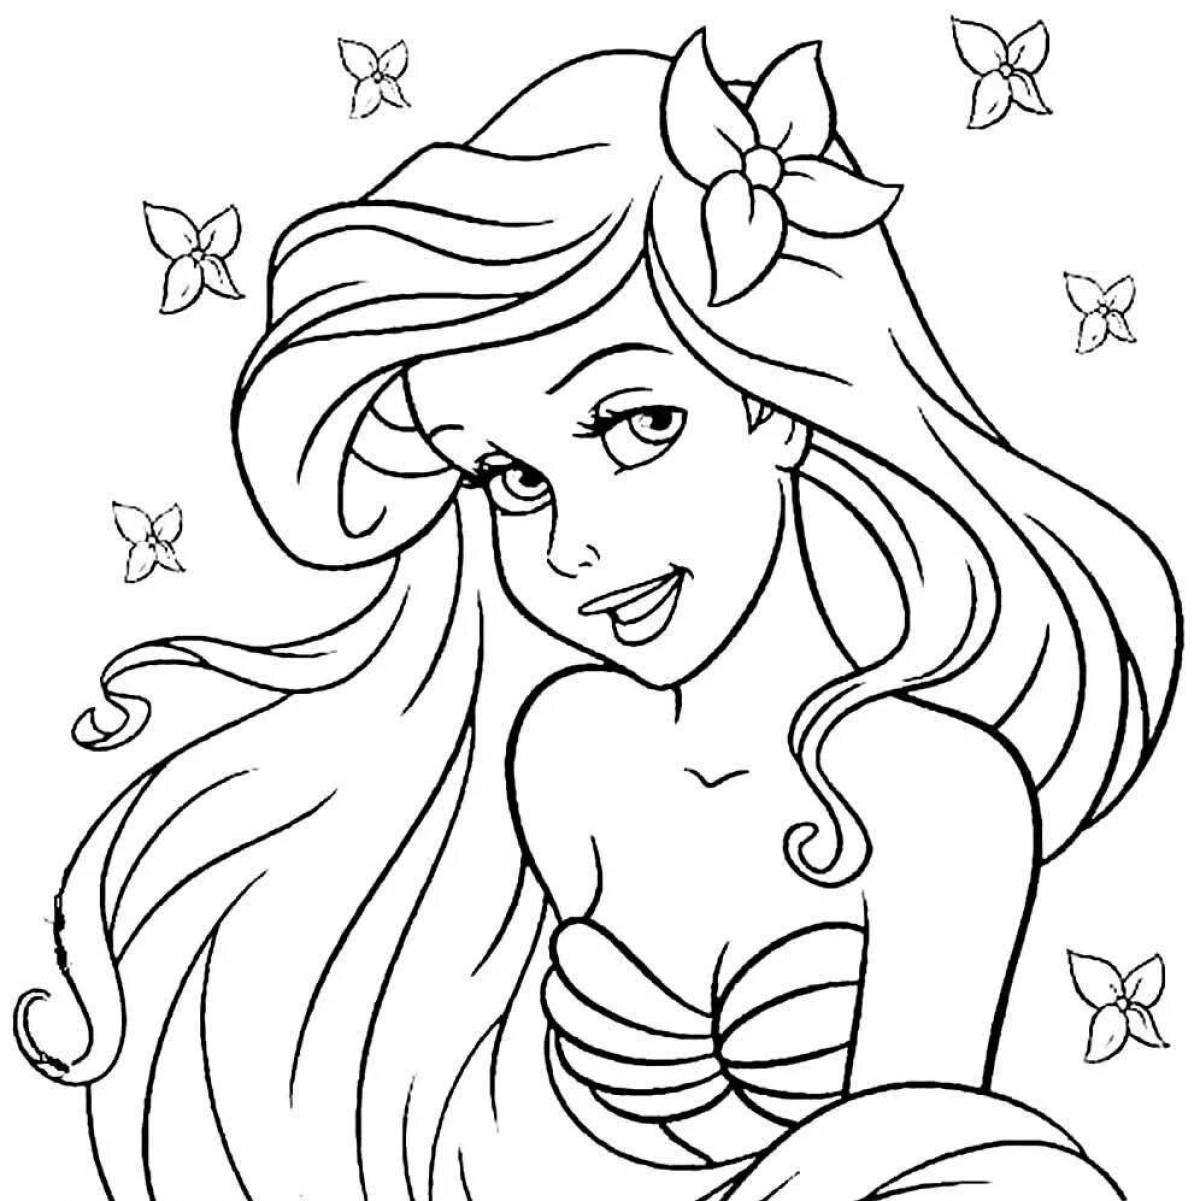 Merry coloring mermaid rapunzel